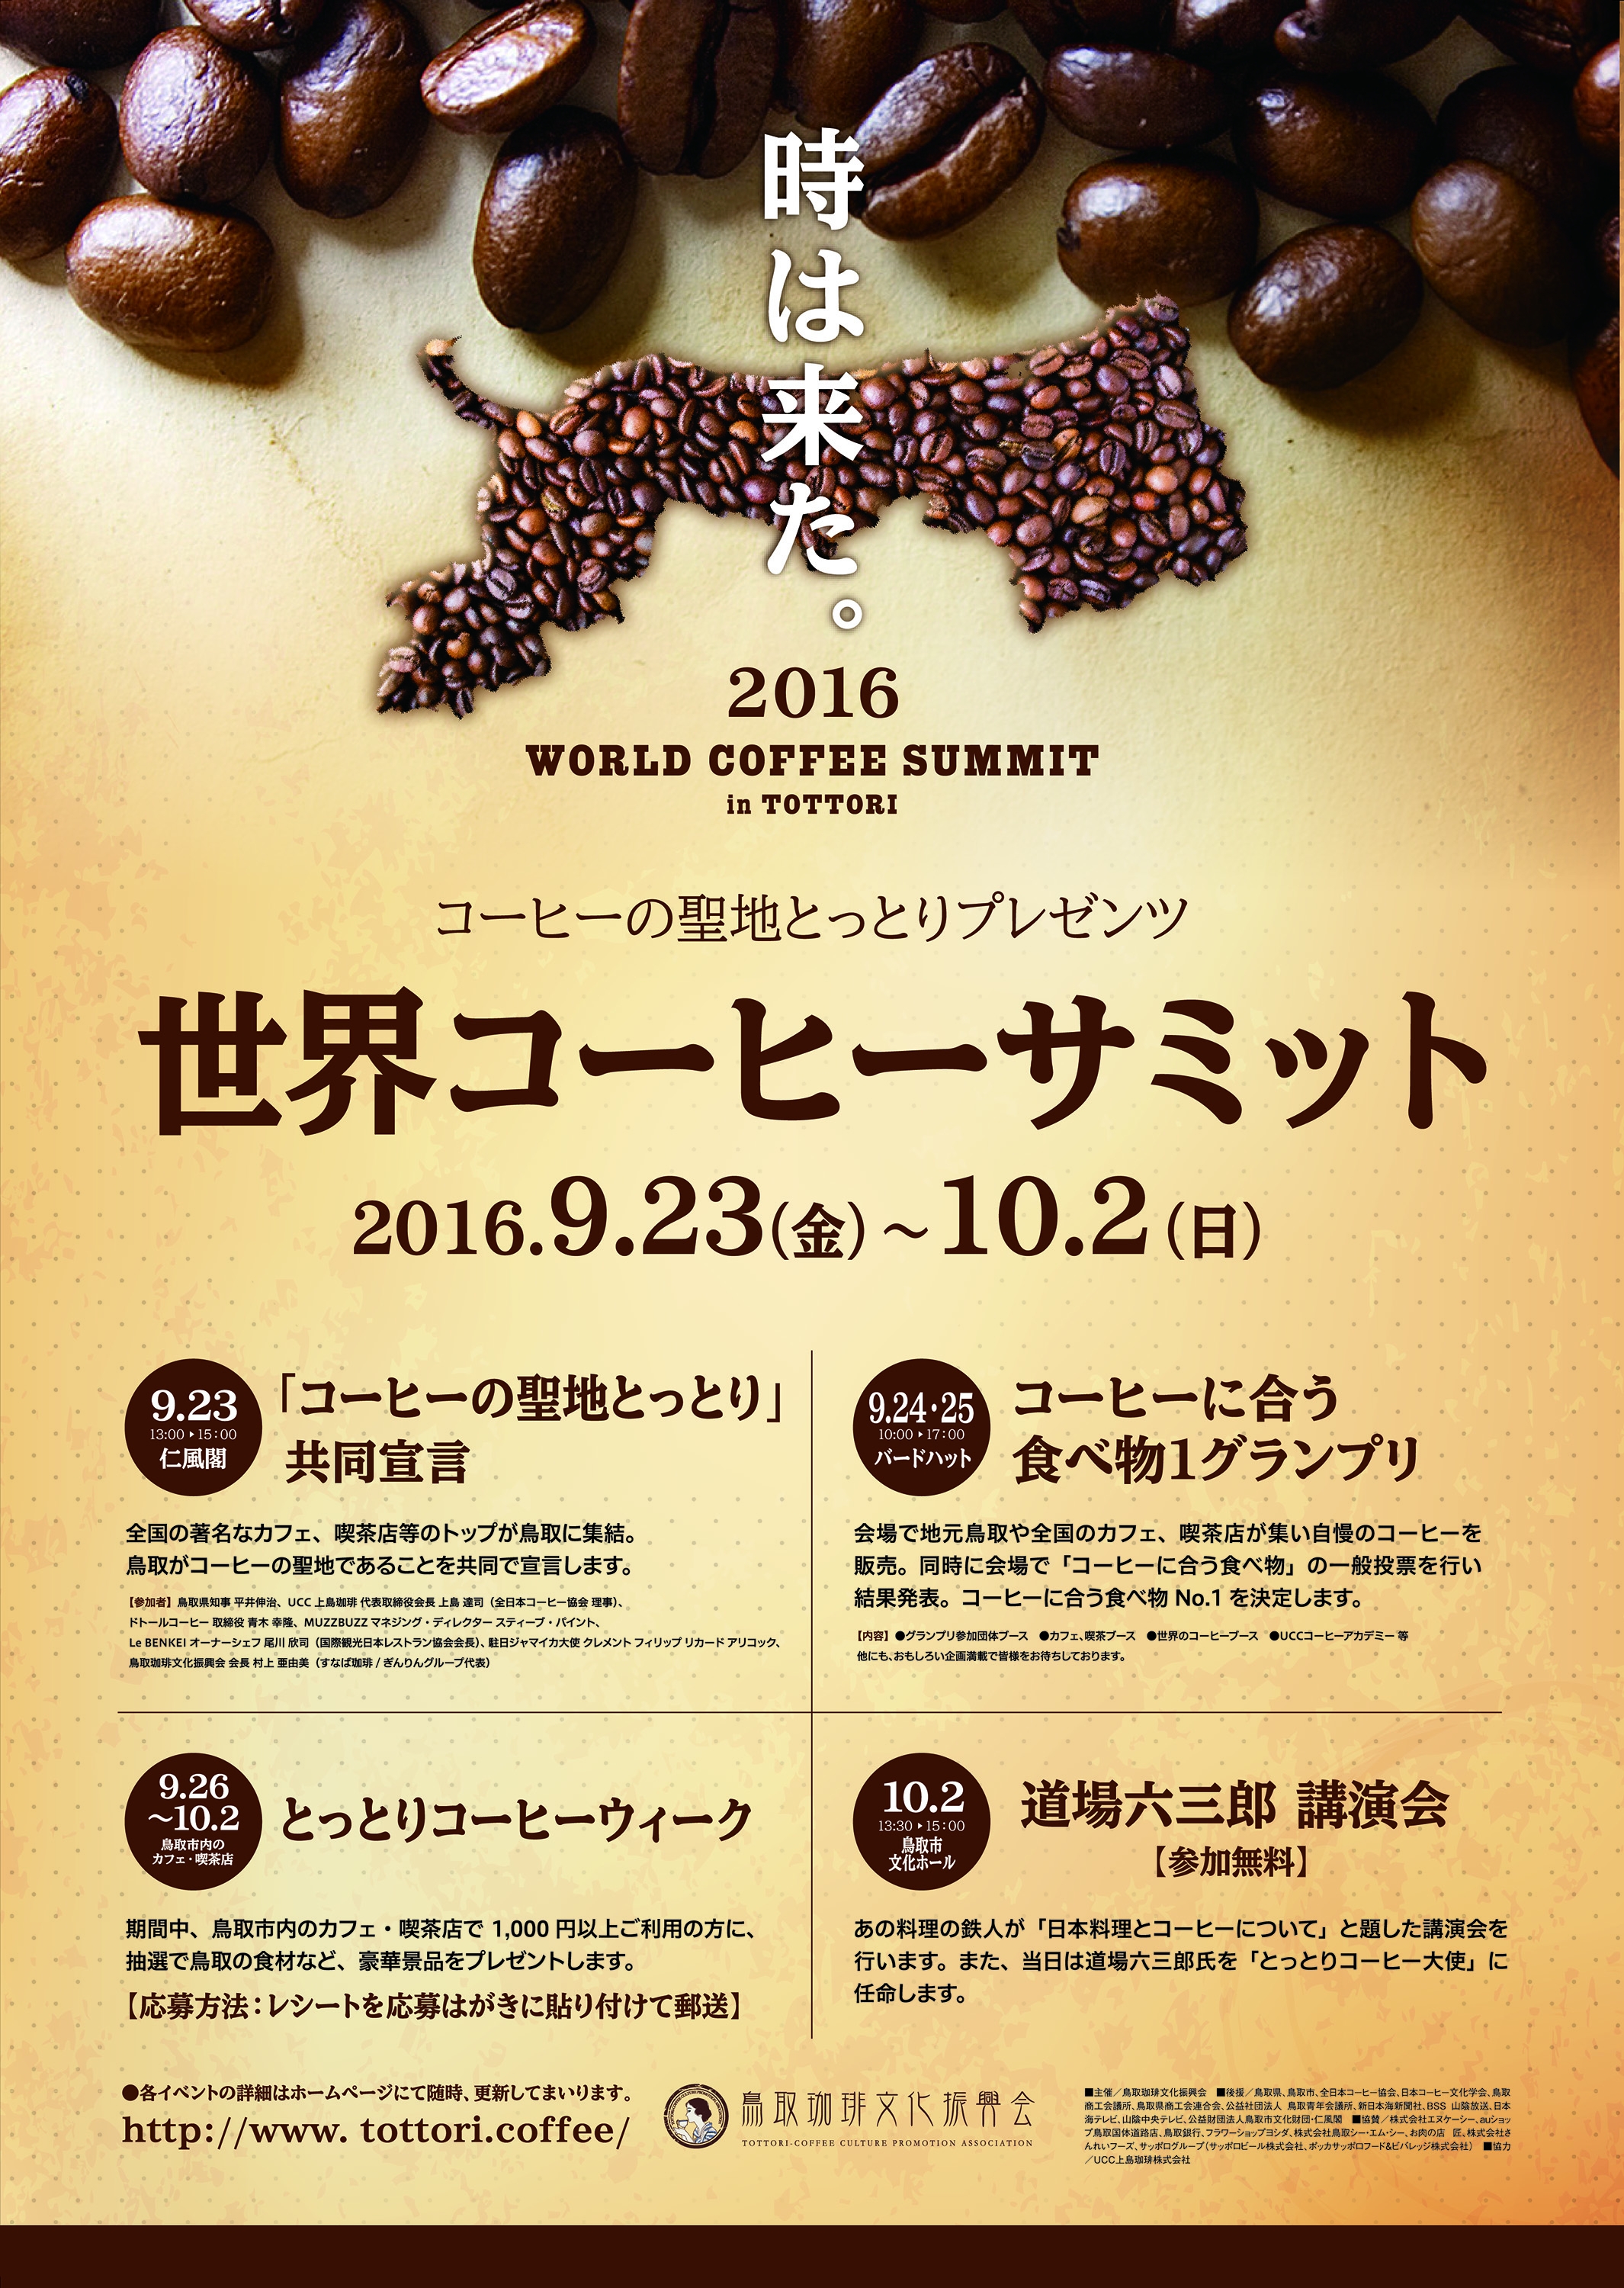 時は来た コーヒーの聖地とっとり プレゼンツ 世界コーヒーサミット 開催 鳥取県のプレスリリース